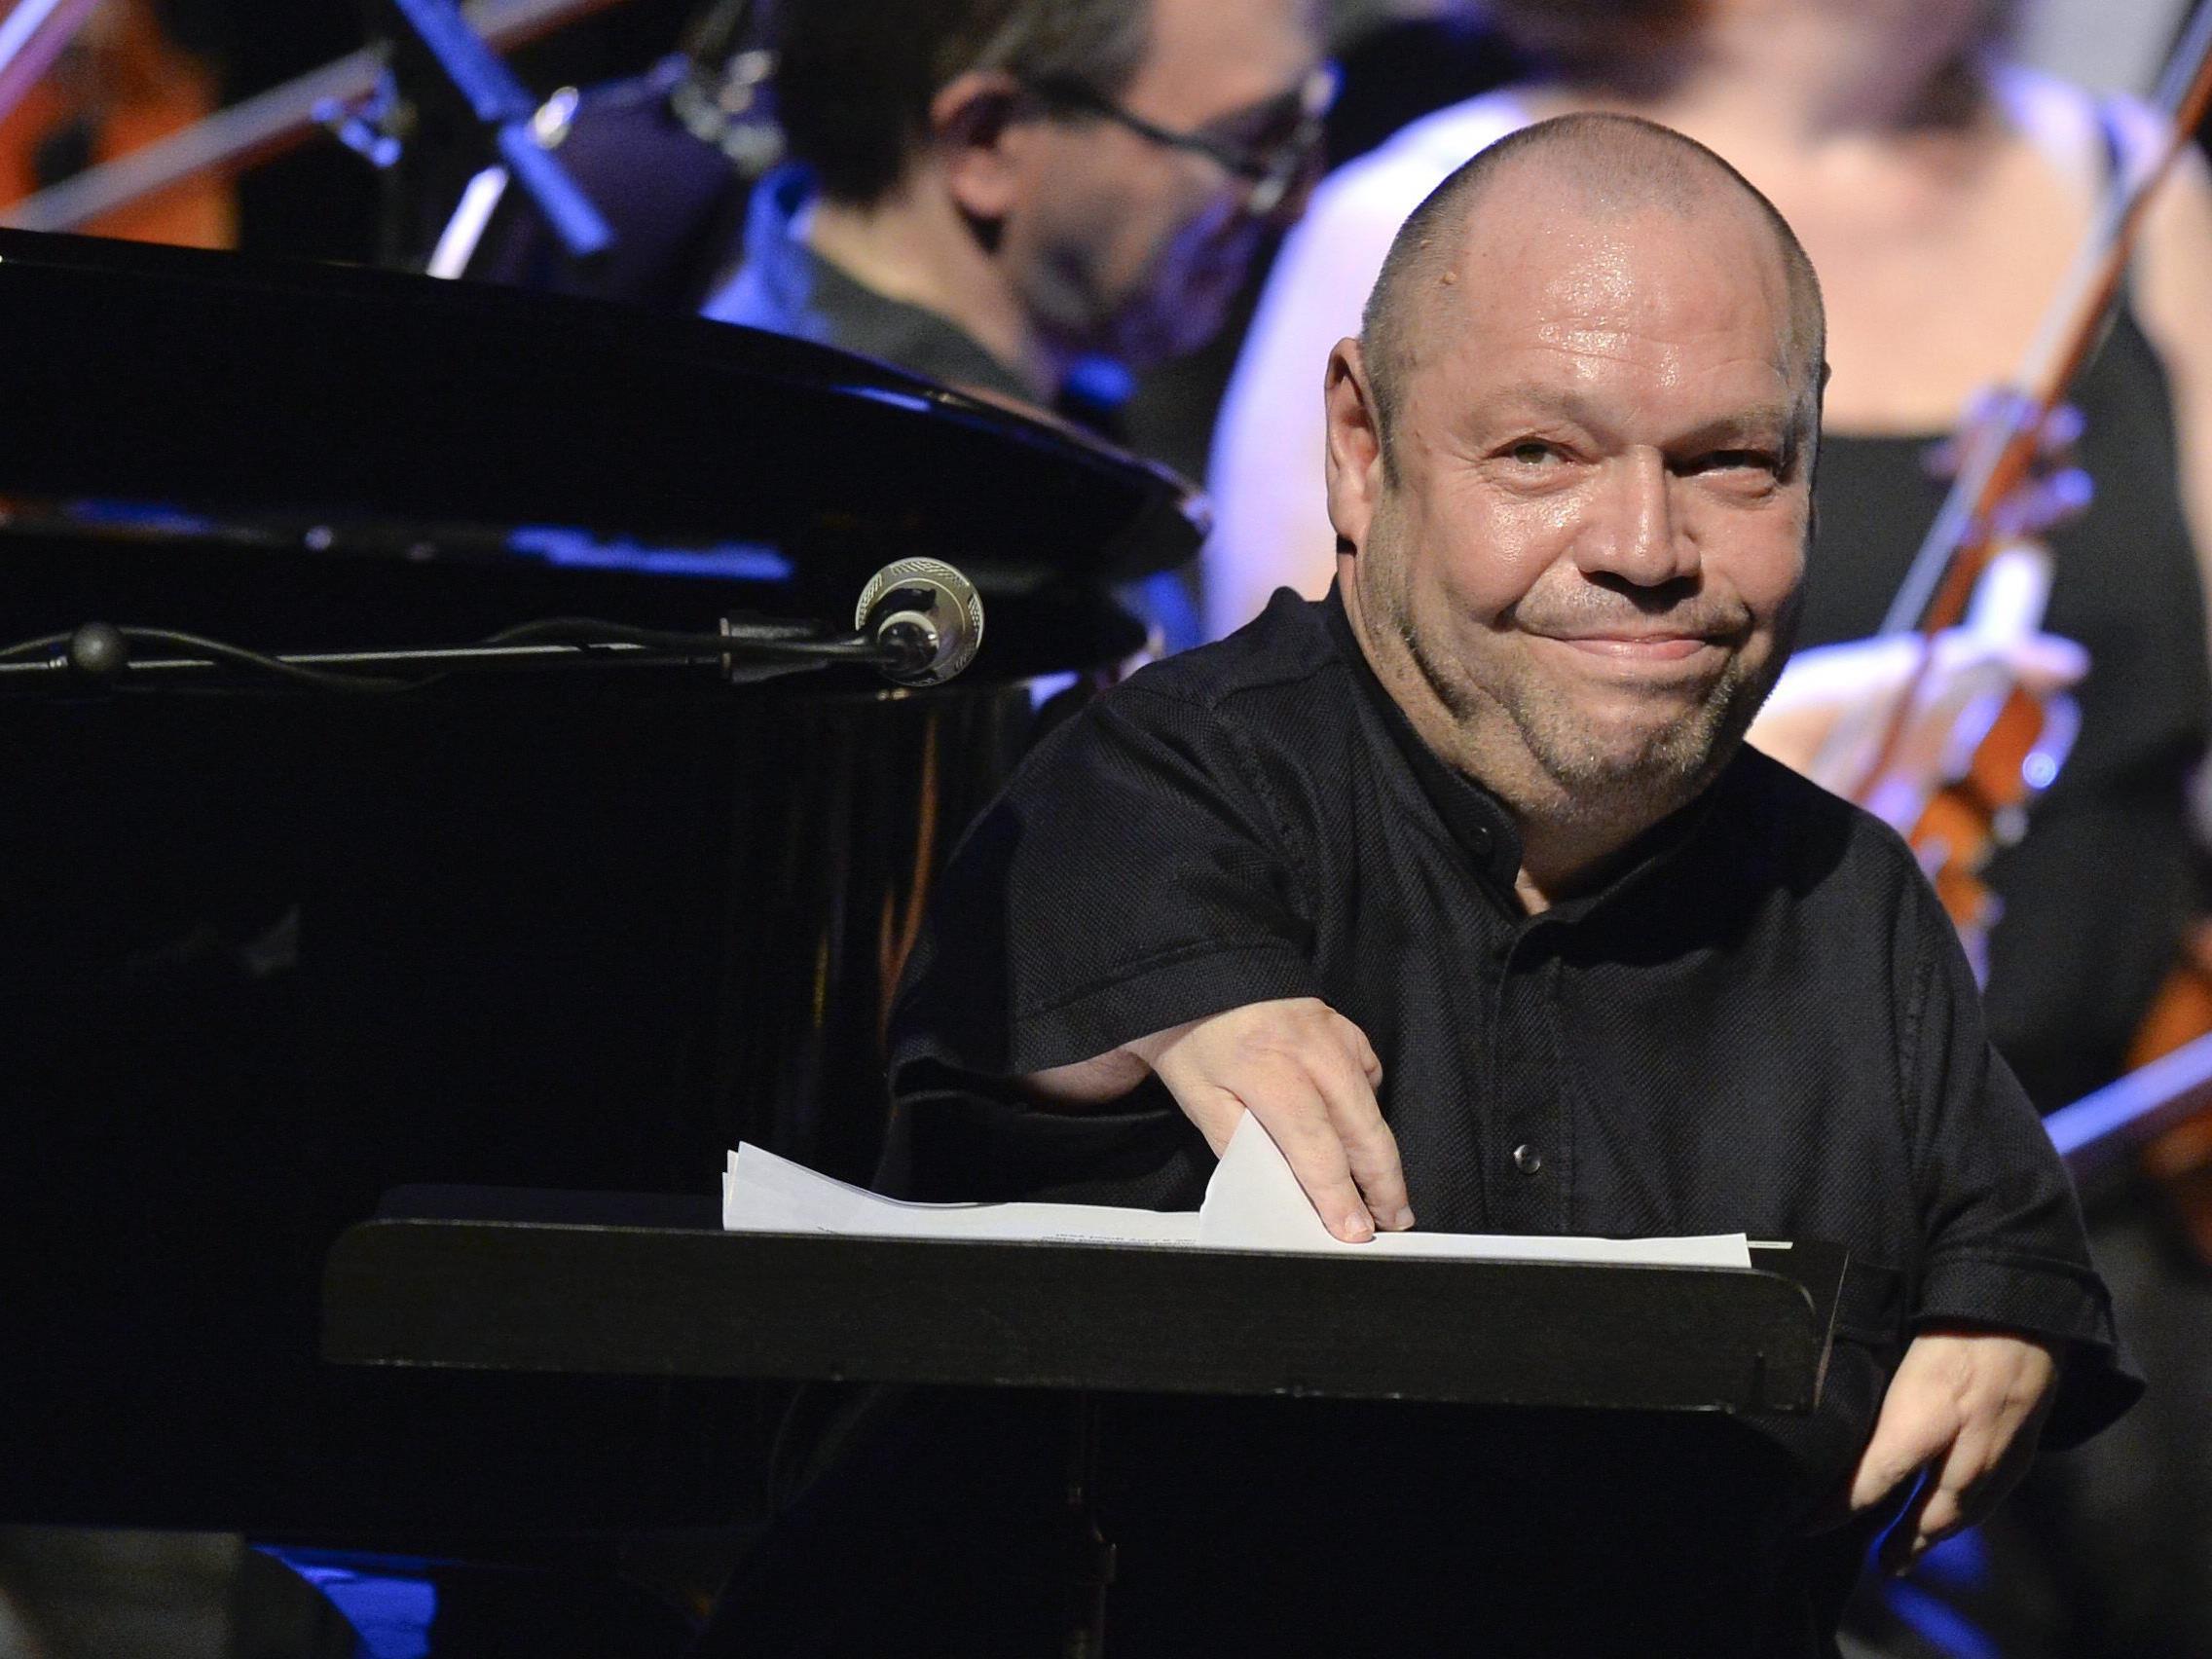 Bass-Bariton Thomas Quasthoff am Montag, 6. Juli 2015, während dem Konzert "Sinatra Tribute" anl. des Jezzfestes Wien in der Wiener Staatsoper.